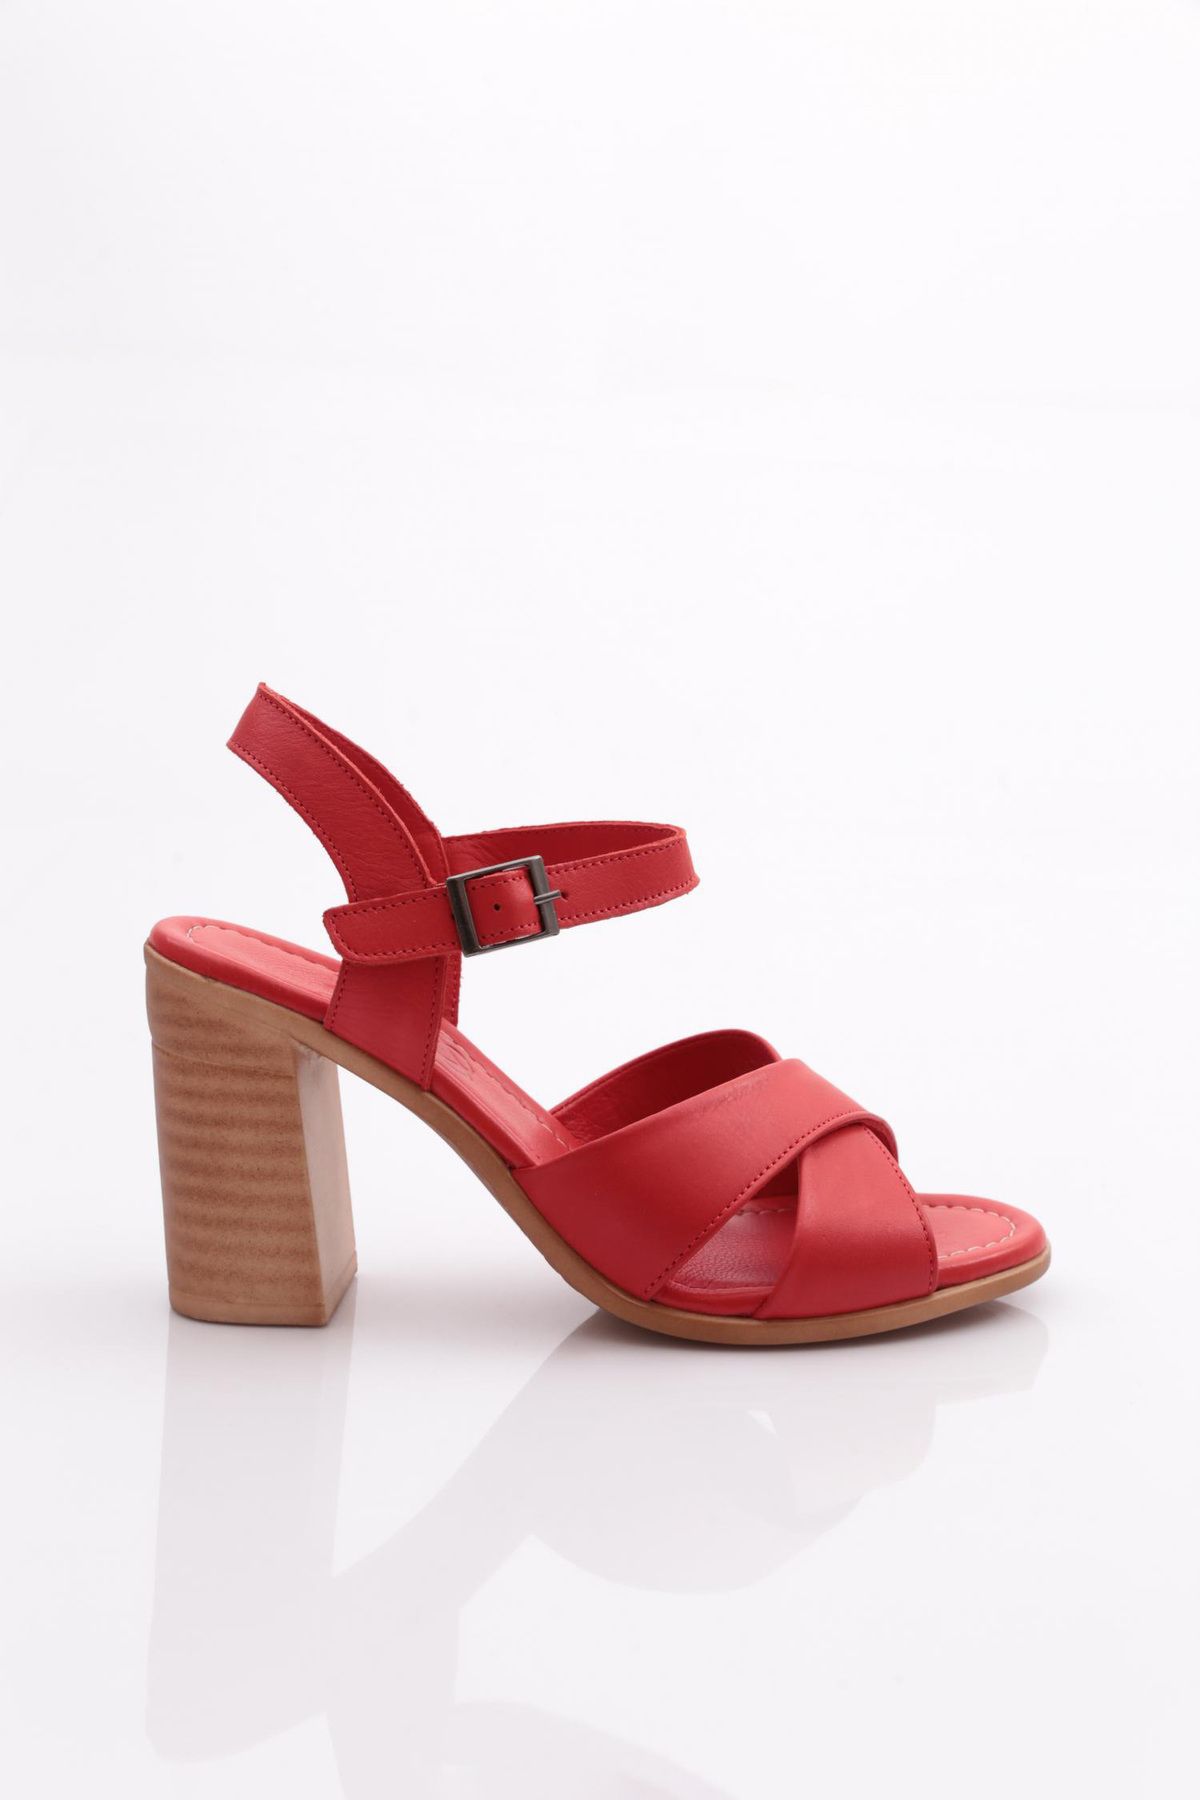 Dgn 2110 Kadın Sandalet Kırmızı